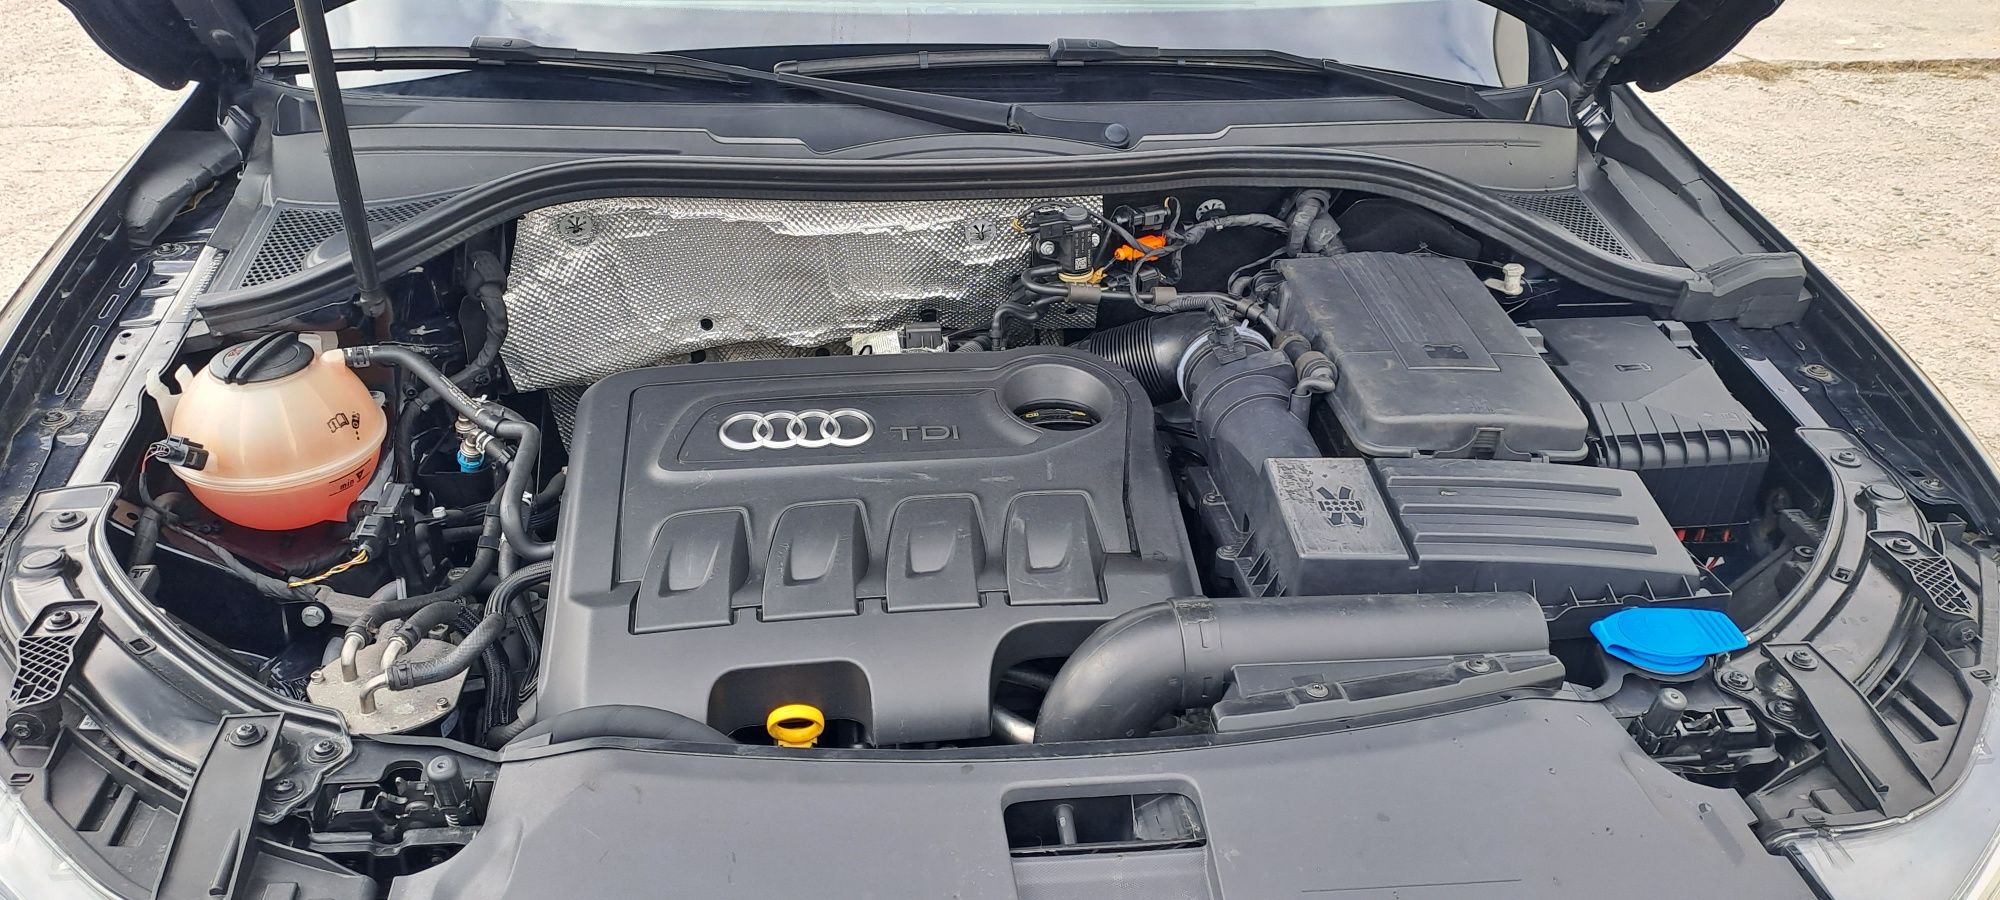 Vand Audi q3 inmatriculat